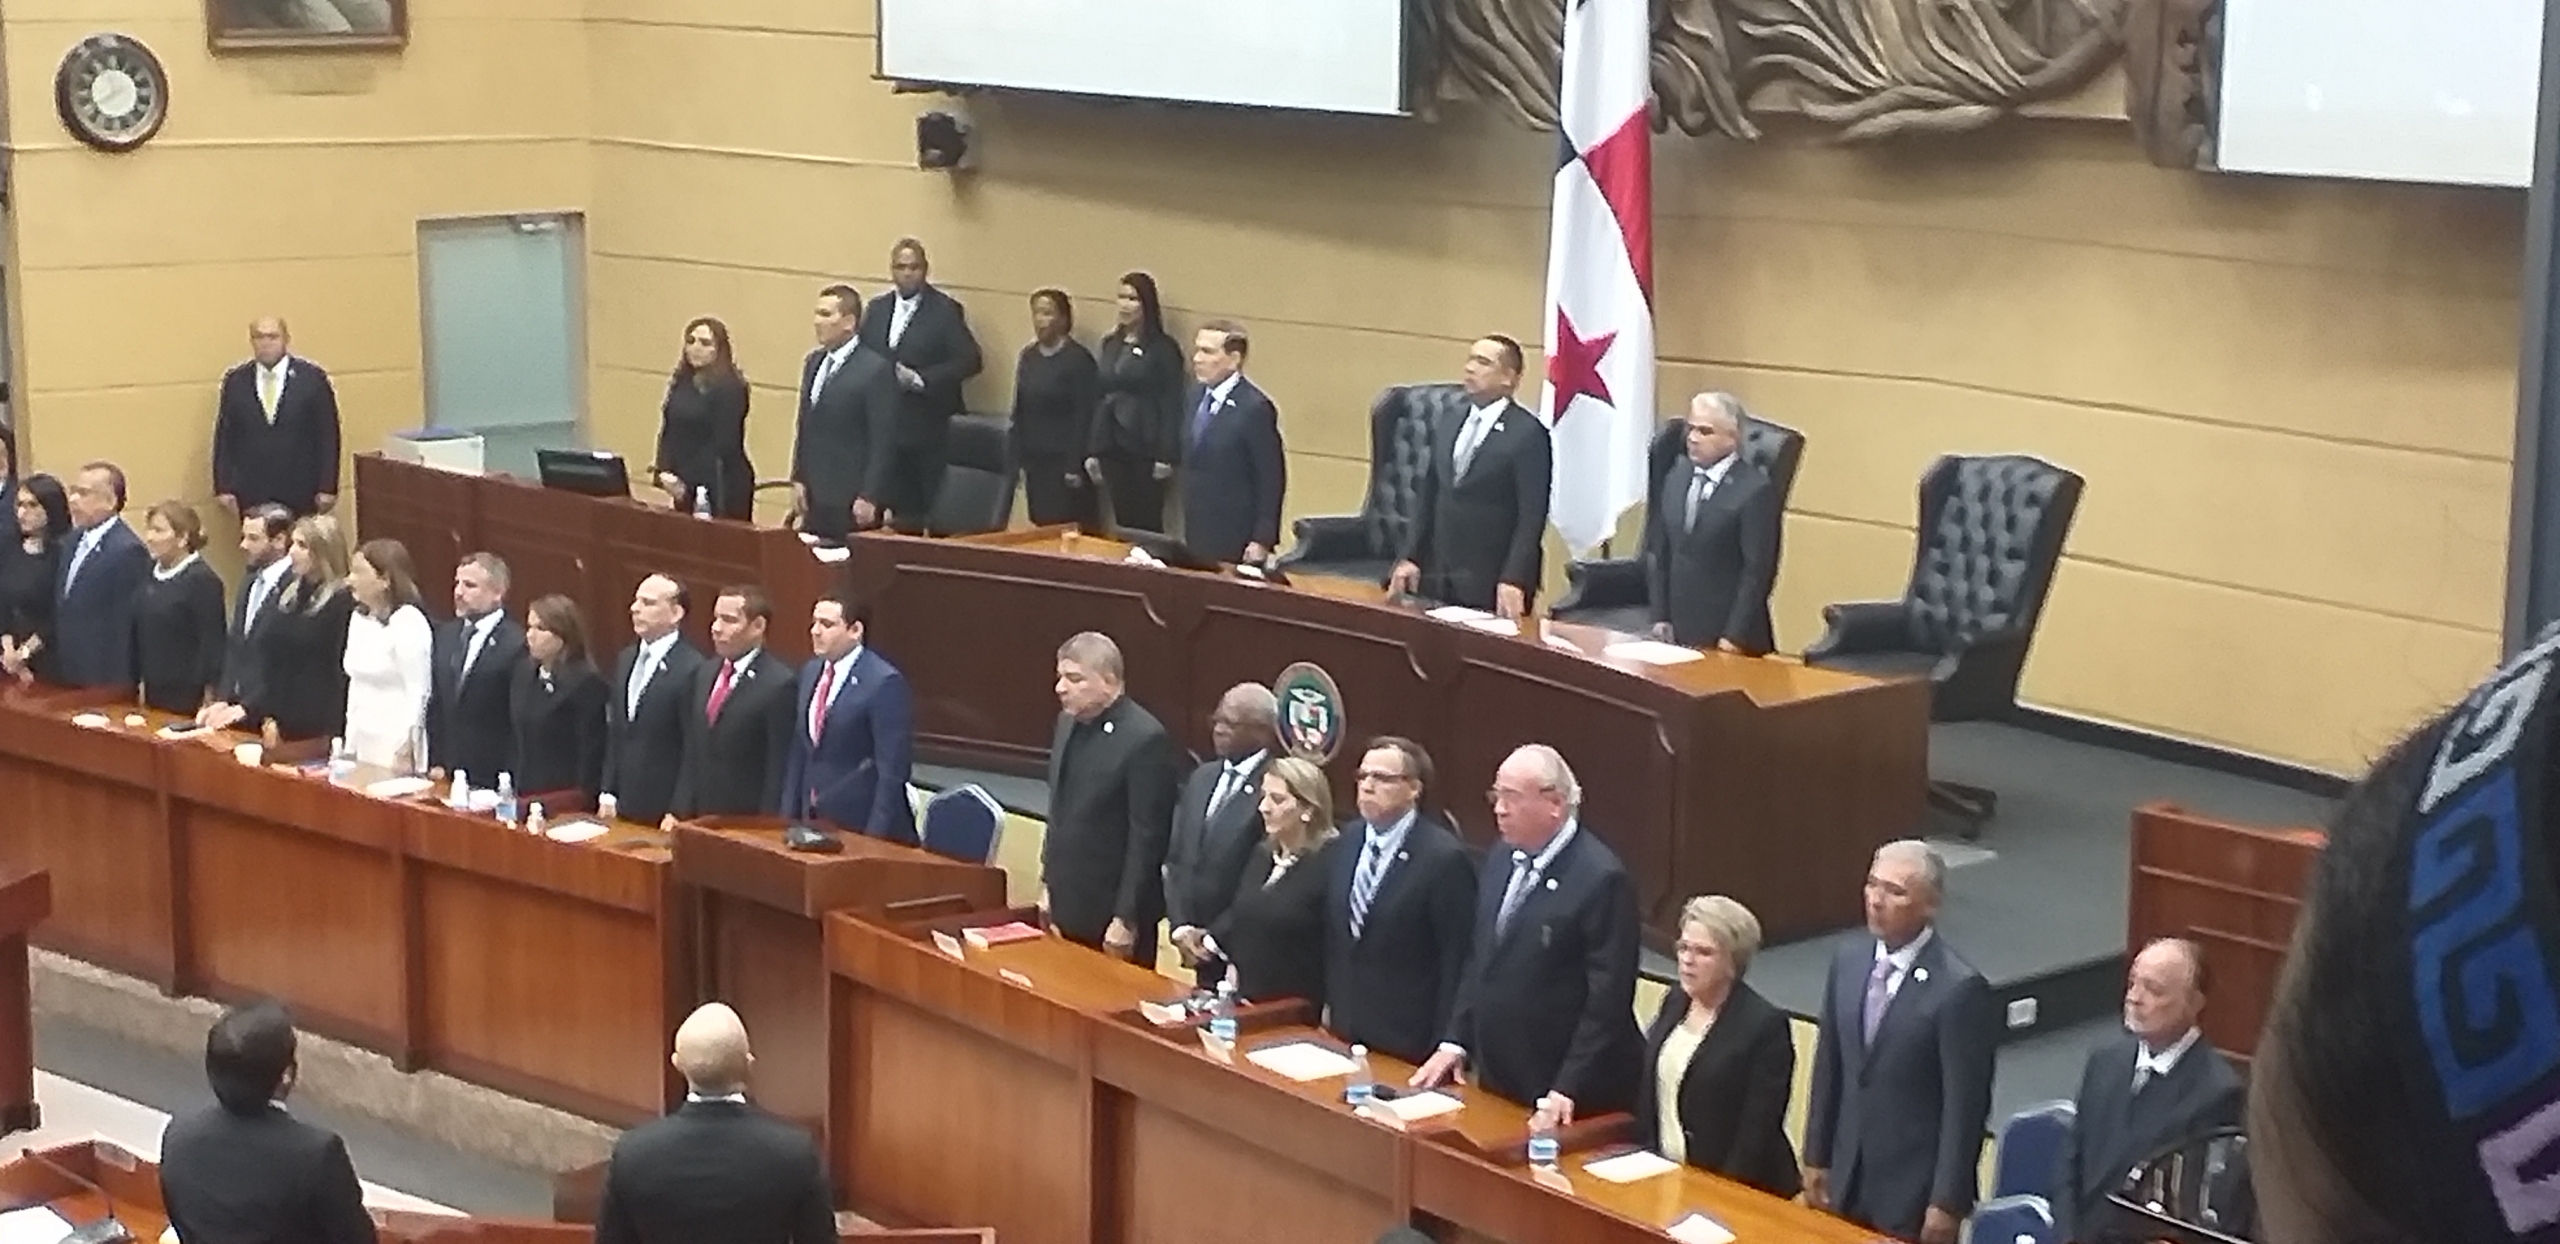 El Presidente de la República de Panamá se pronuncia al pueblo